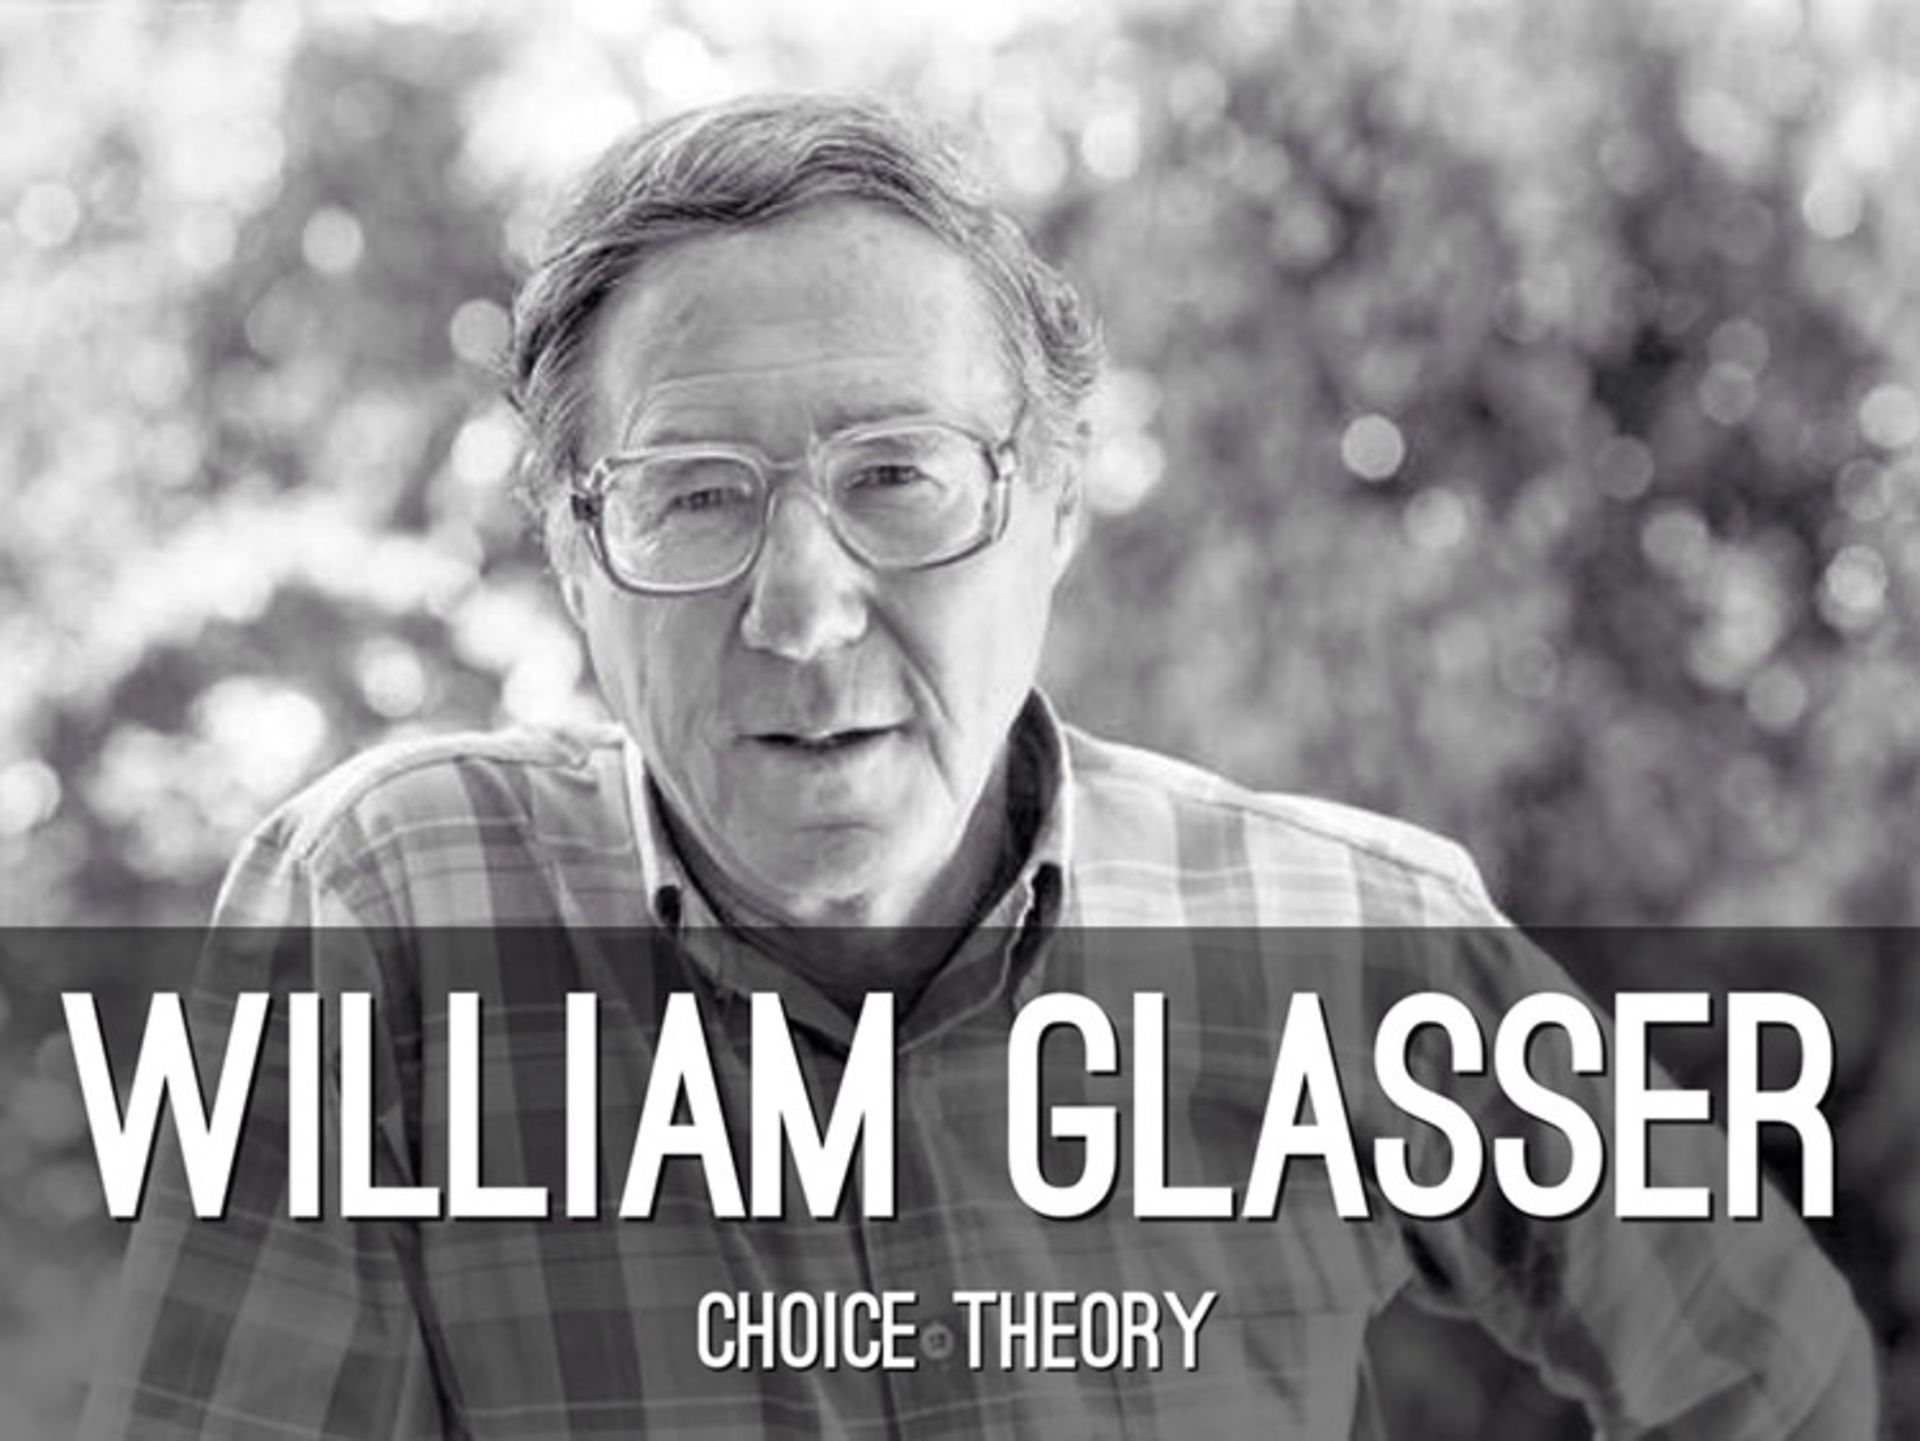 مرجع متخصصين ايران ويليام گلاسر/william glasser